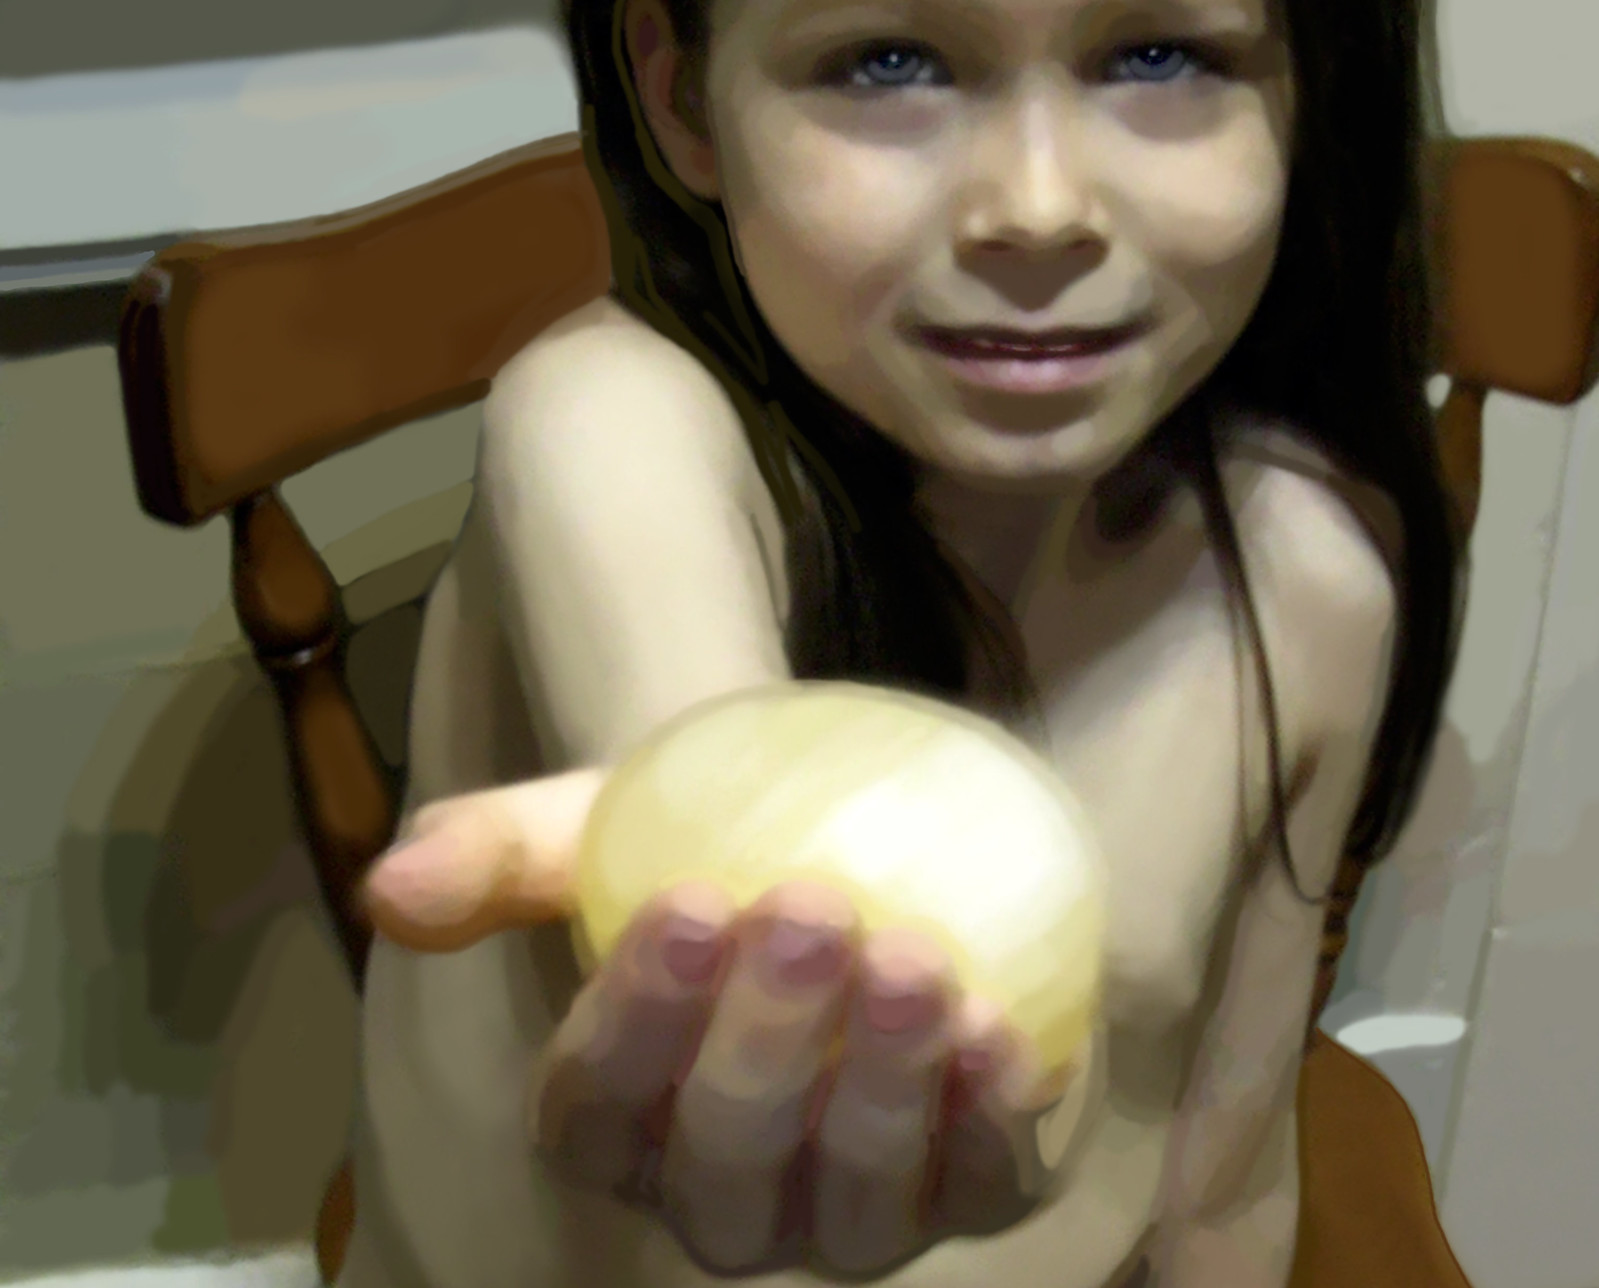 The Golden Egg #2 - 2004